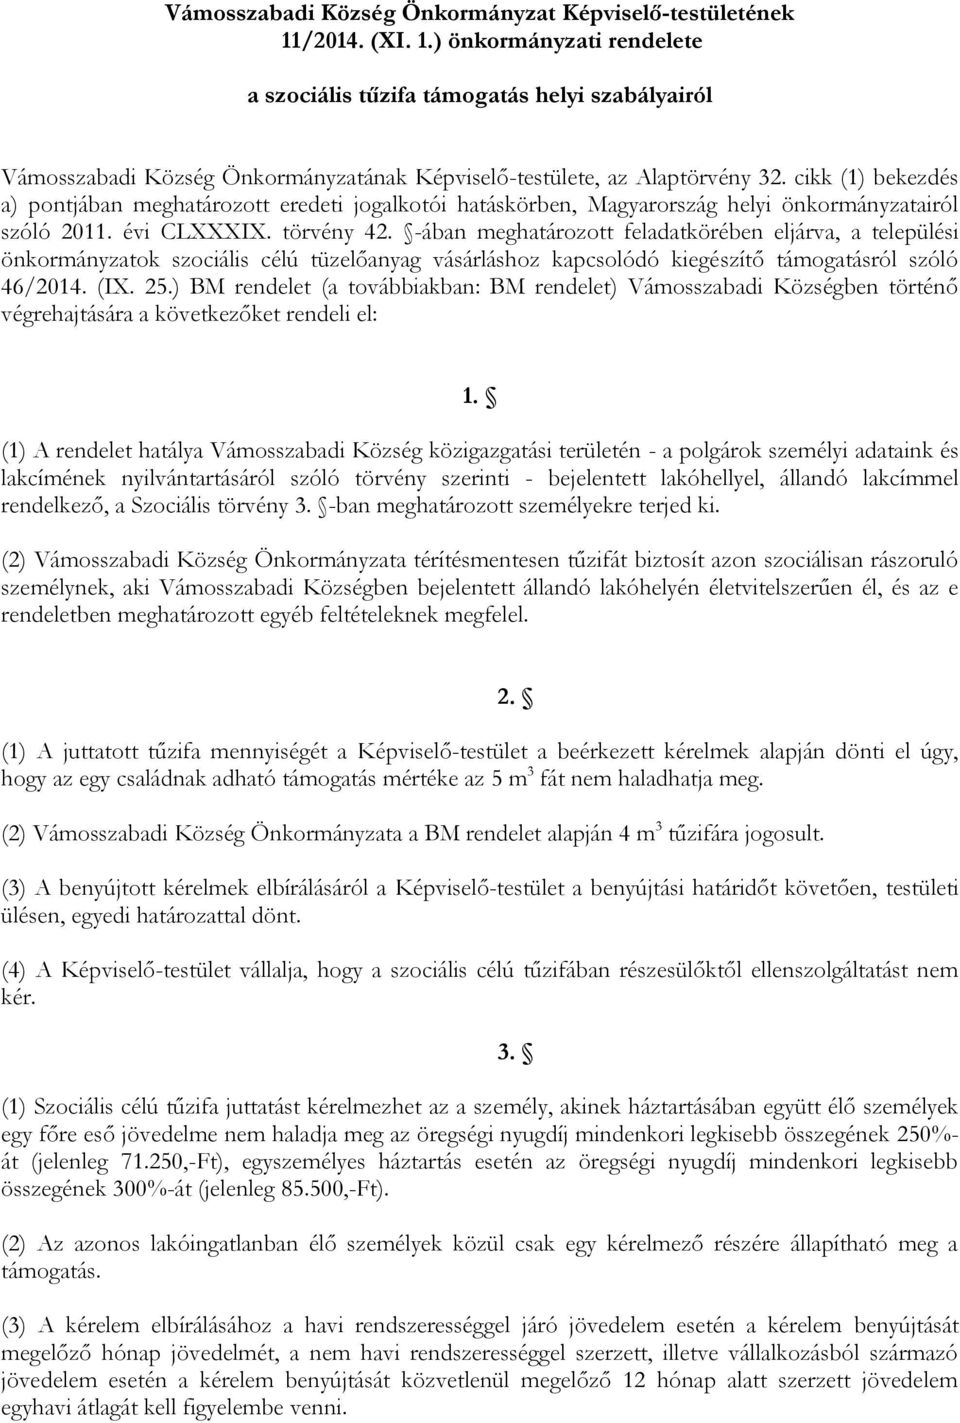 cikk (1) bekezdés a) pontjában meghatározott eredeti jogalkotói hatáskörben, Magyarország helyi önkormányzatairól szóló 2011. évi CLXXXIX. törvény 42.